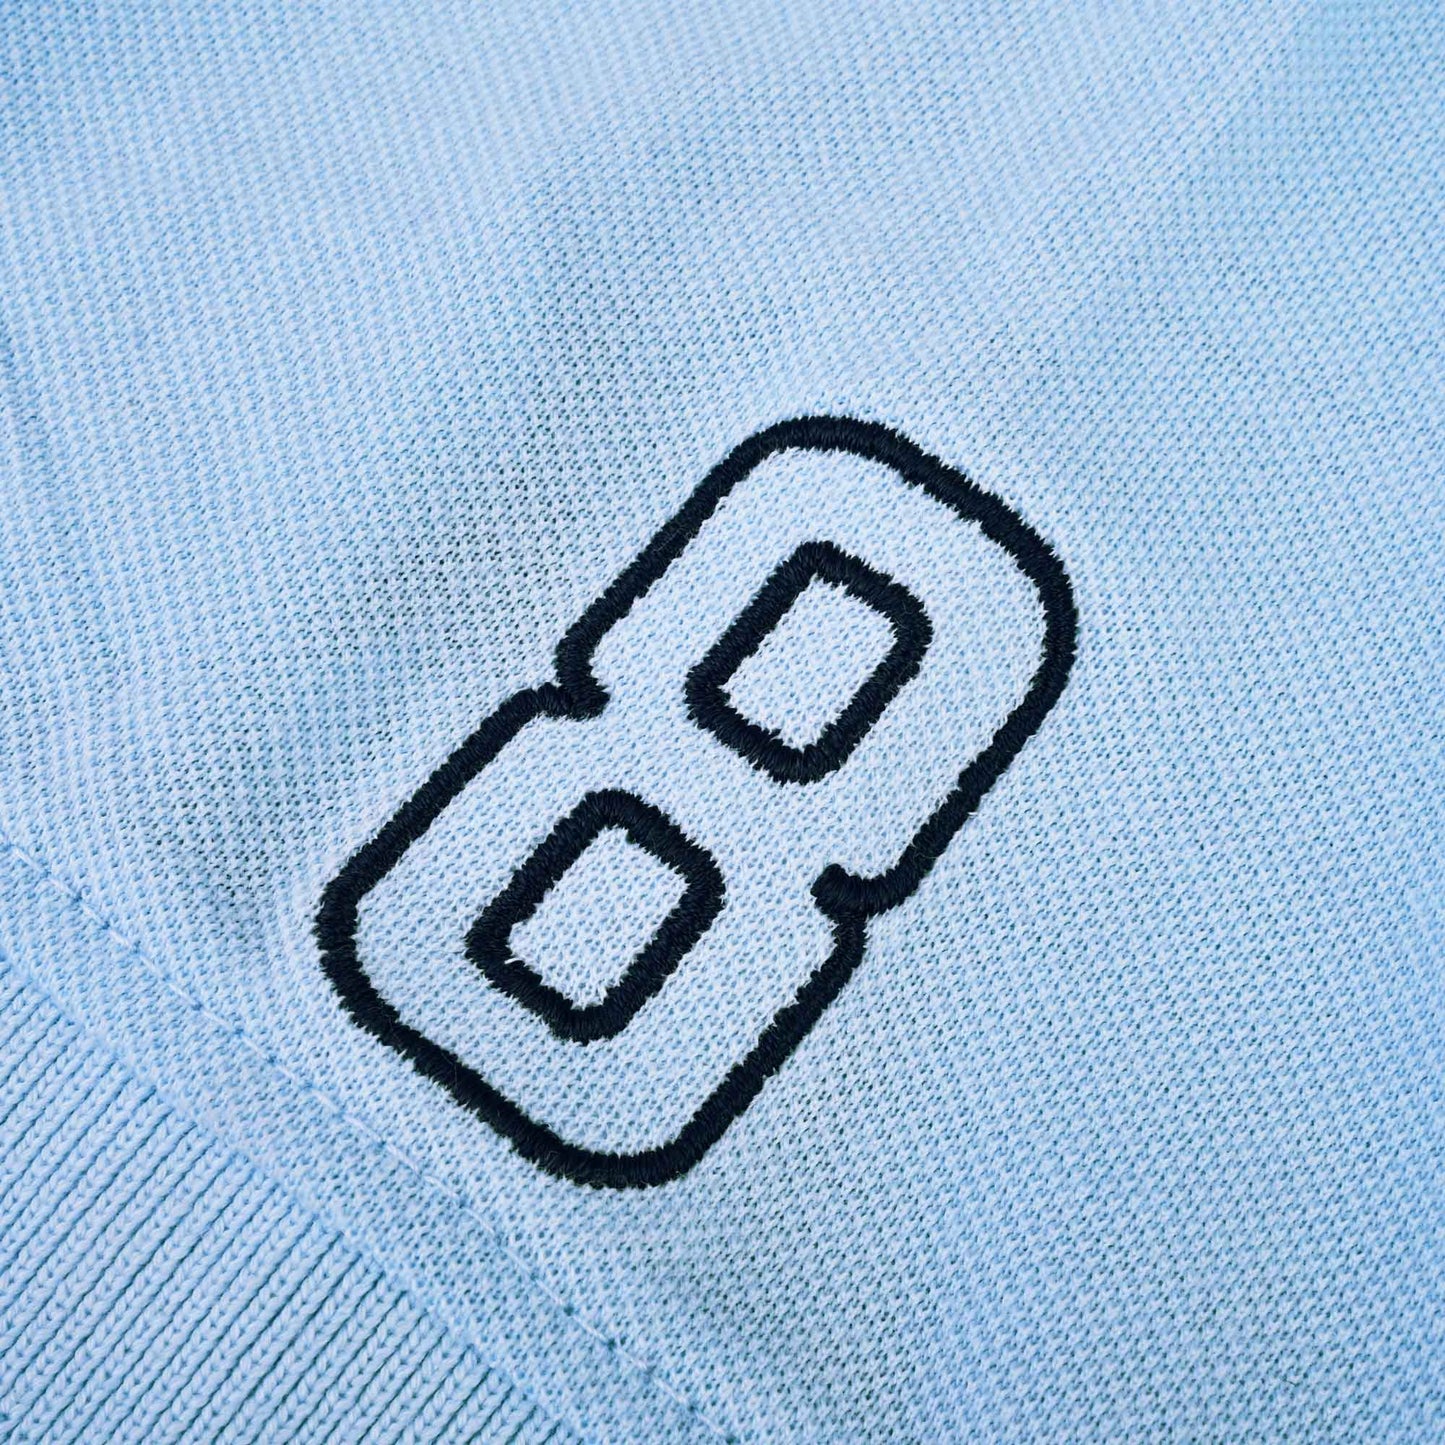 Polo Republica Men's Leo Crest & 8 Embroidered Polo Shirt Men's Polo Shirt Polo Republica 